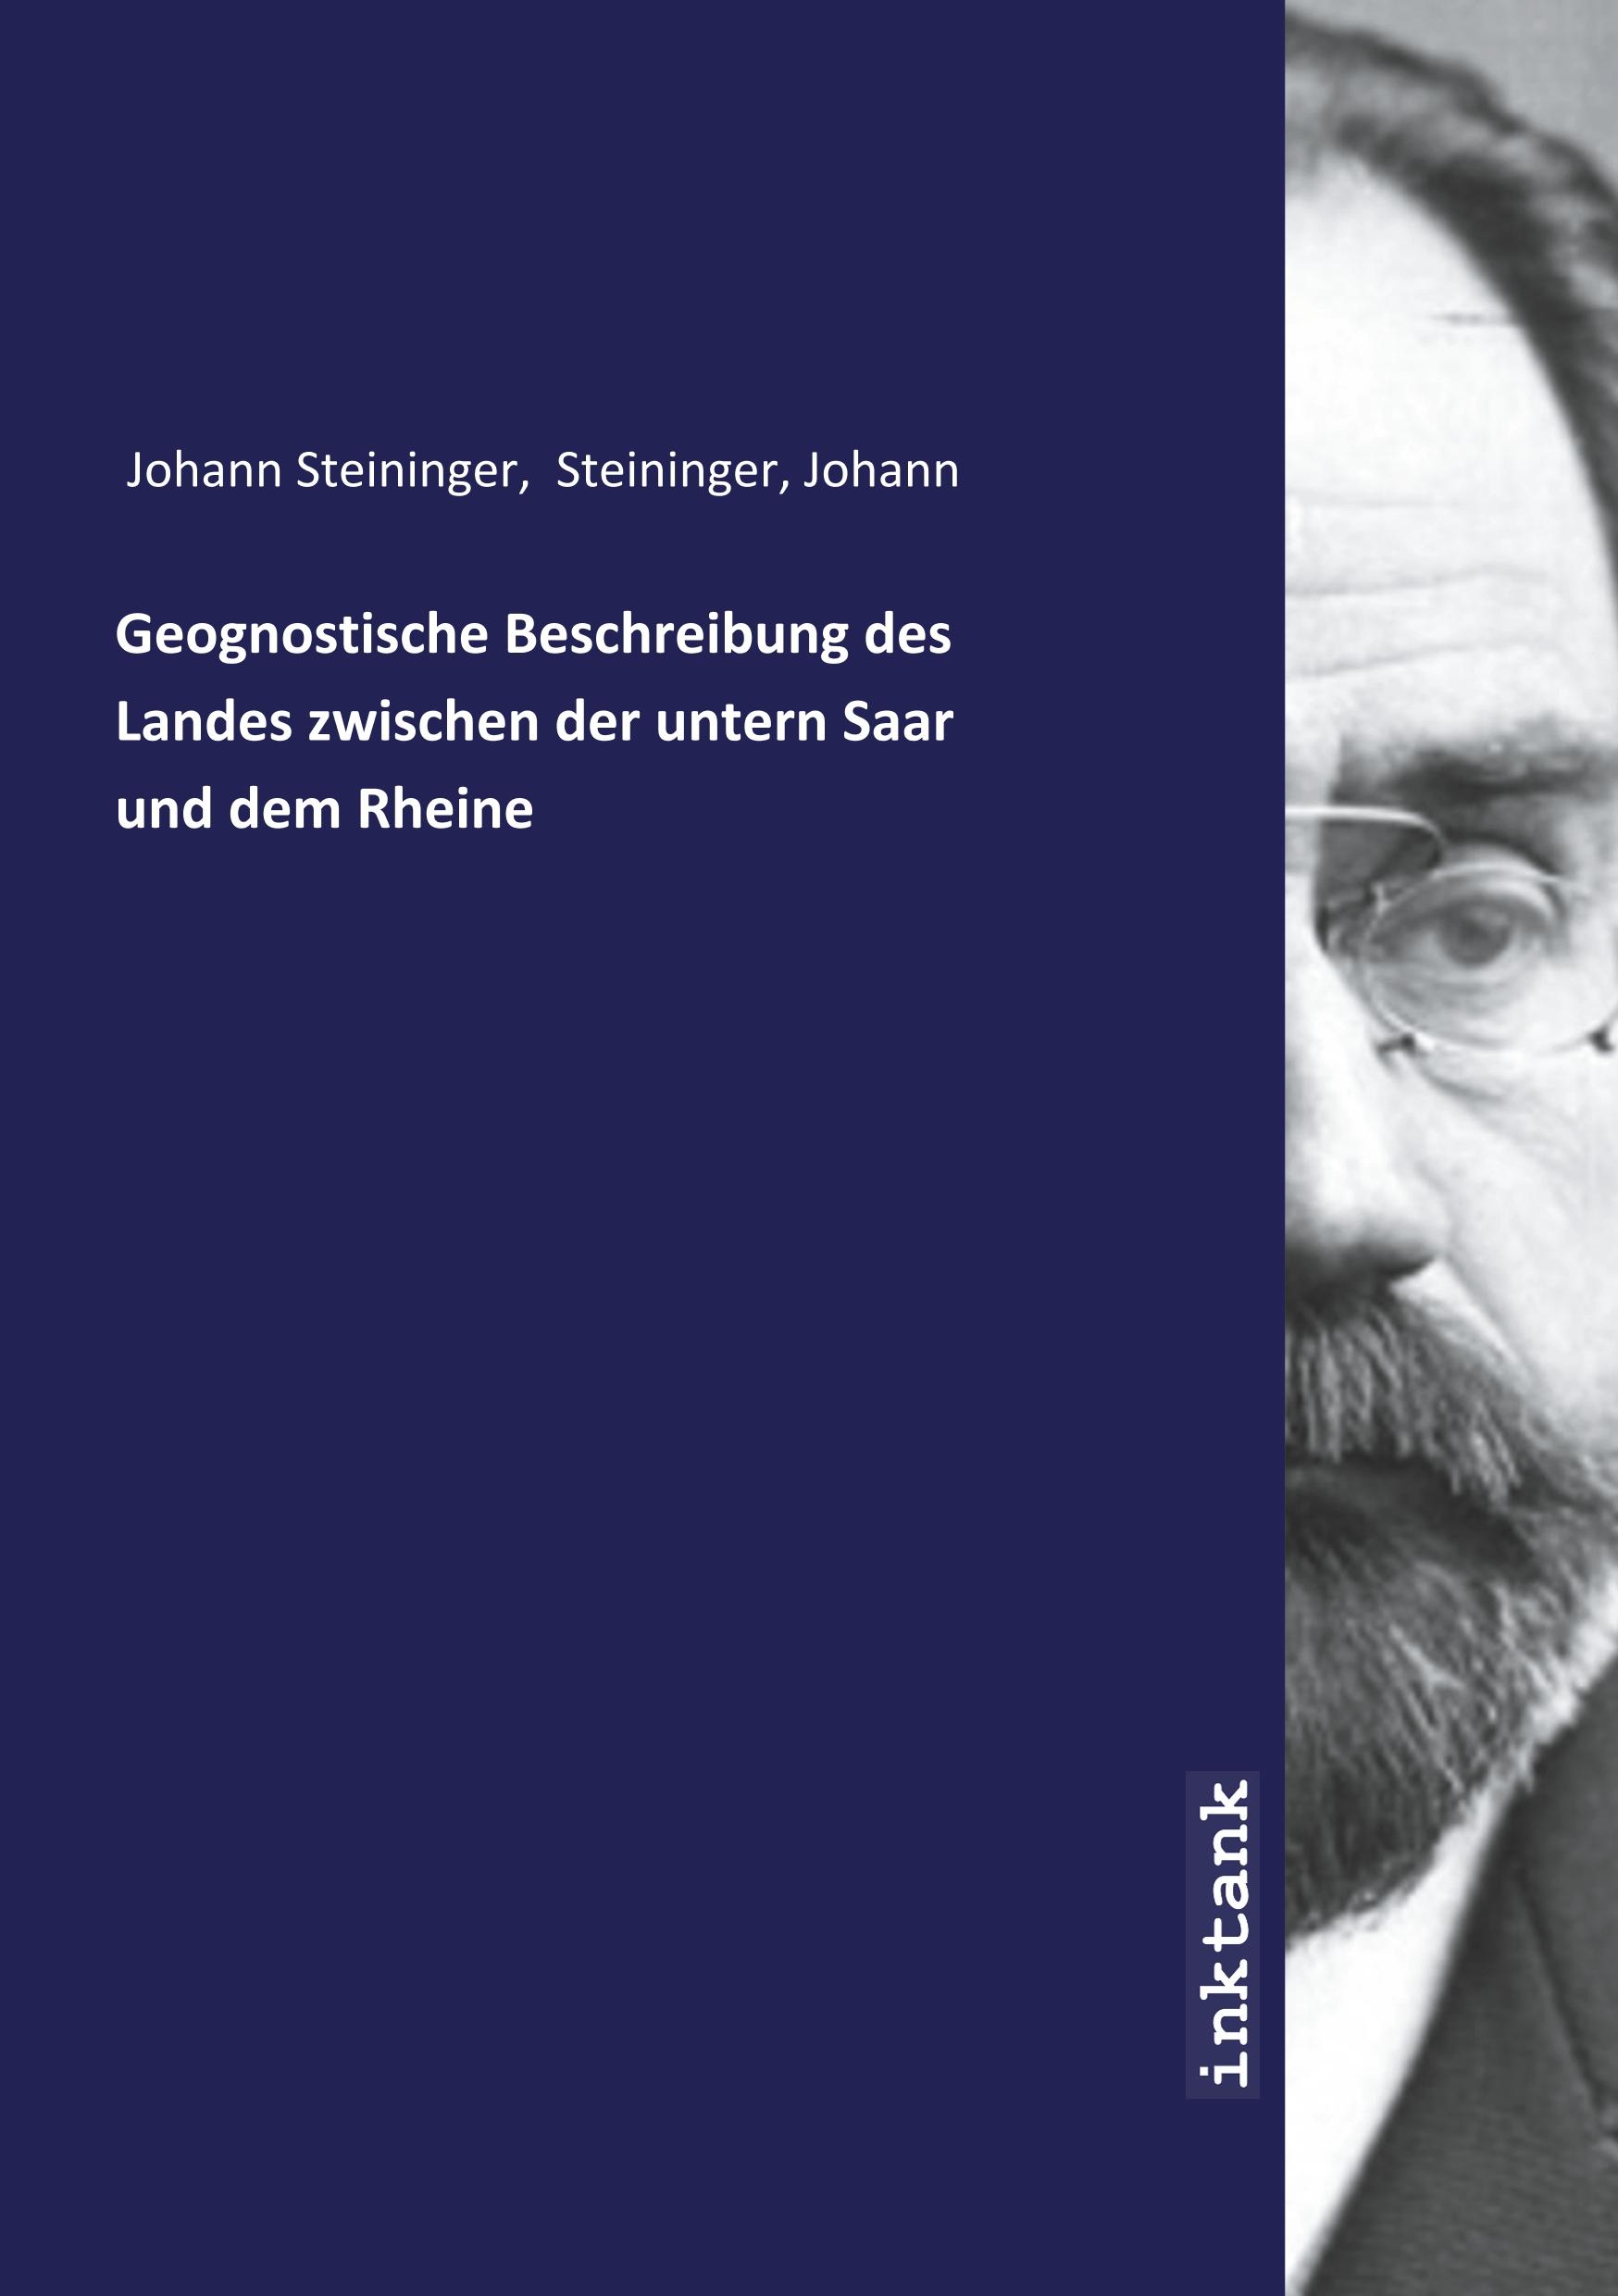 Geognostische Beschreibung des Landes zwischen der untern Saar und dem Rheine - Steiniger, Johann Steininger, Johann